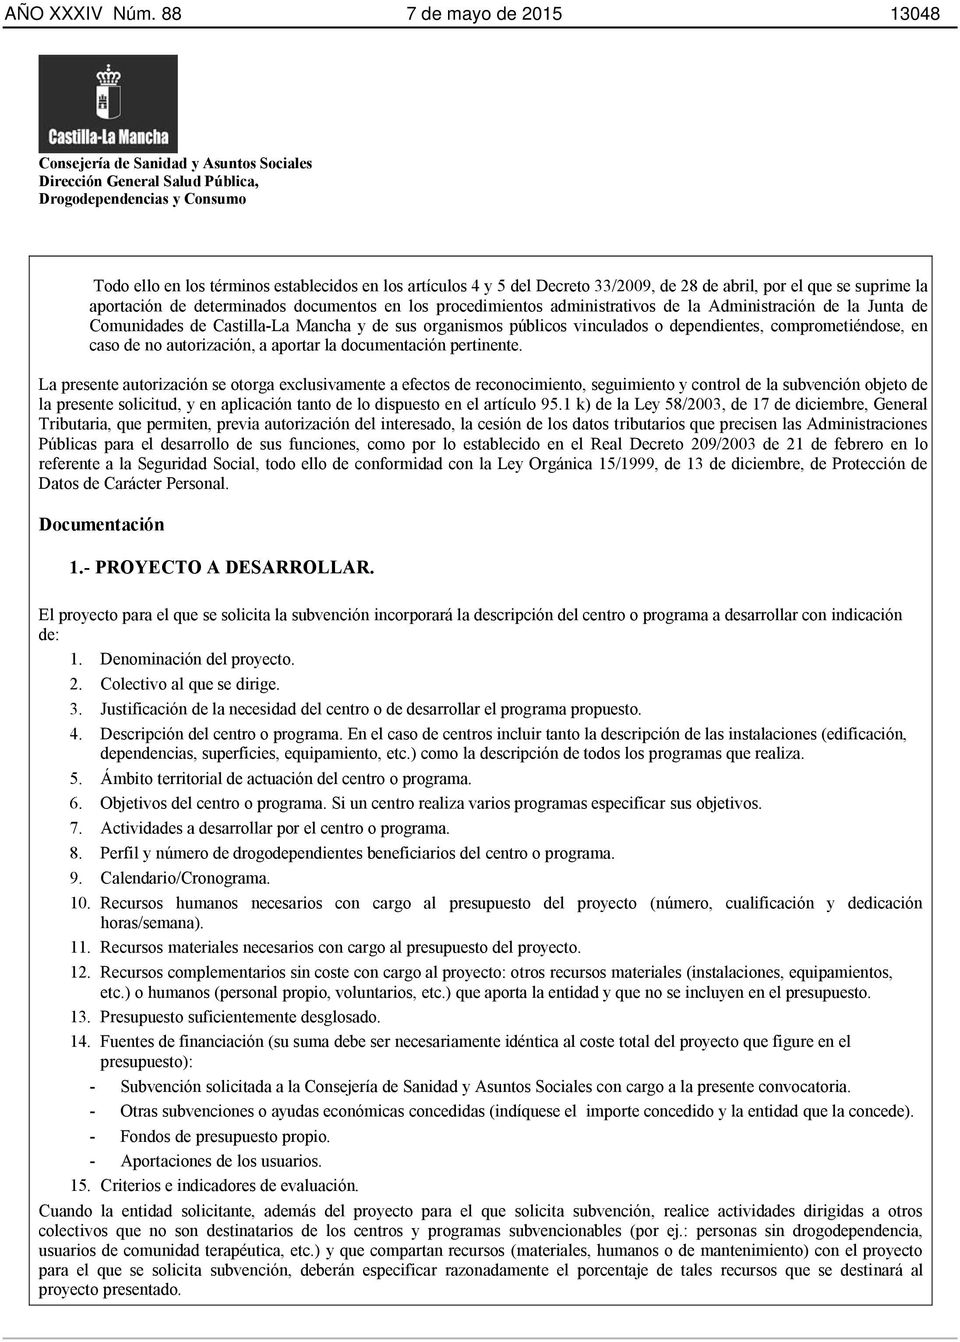 procedimientos administrativos de la Administración de la Junta de Comunidades de Castilla-La Mancha y de sus organismos públicos vinculados o dependientes, comprometiéndose, en caso de no